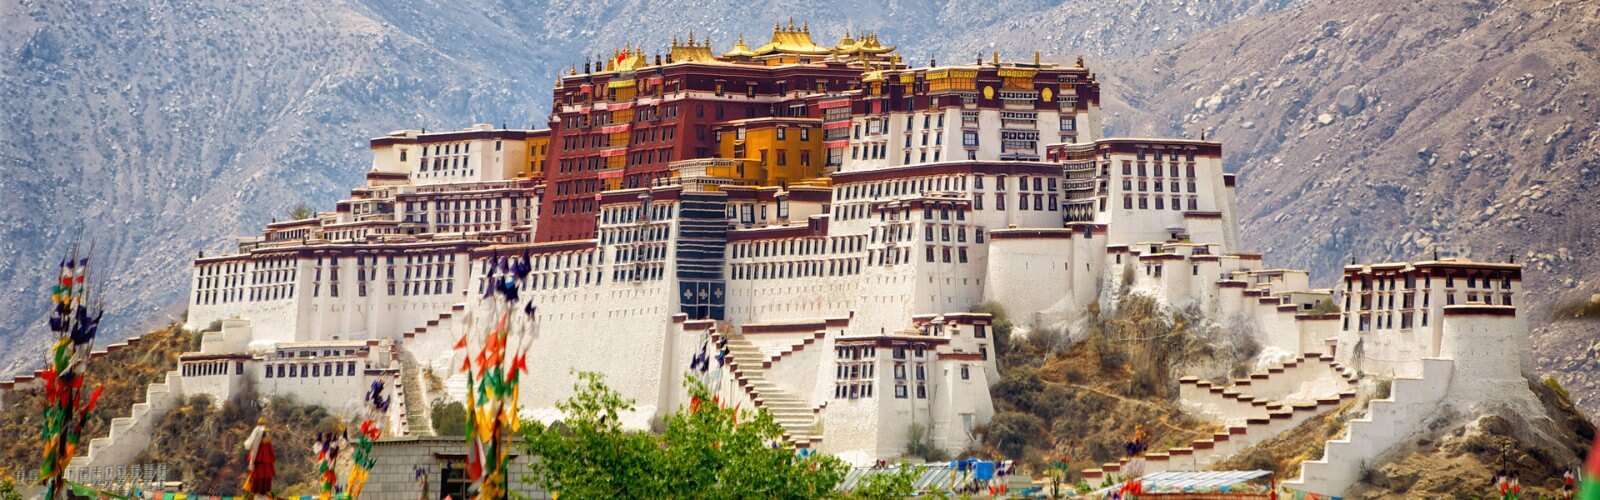 sokrovishha-i-tayny-malogo-tibeta